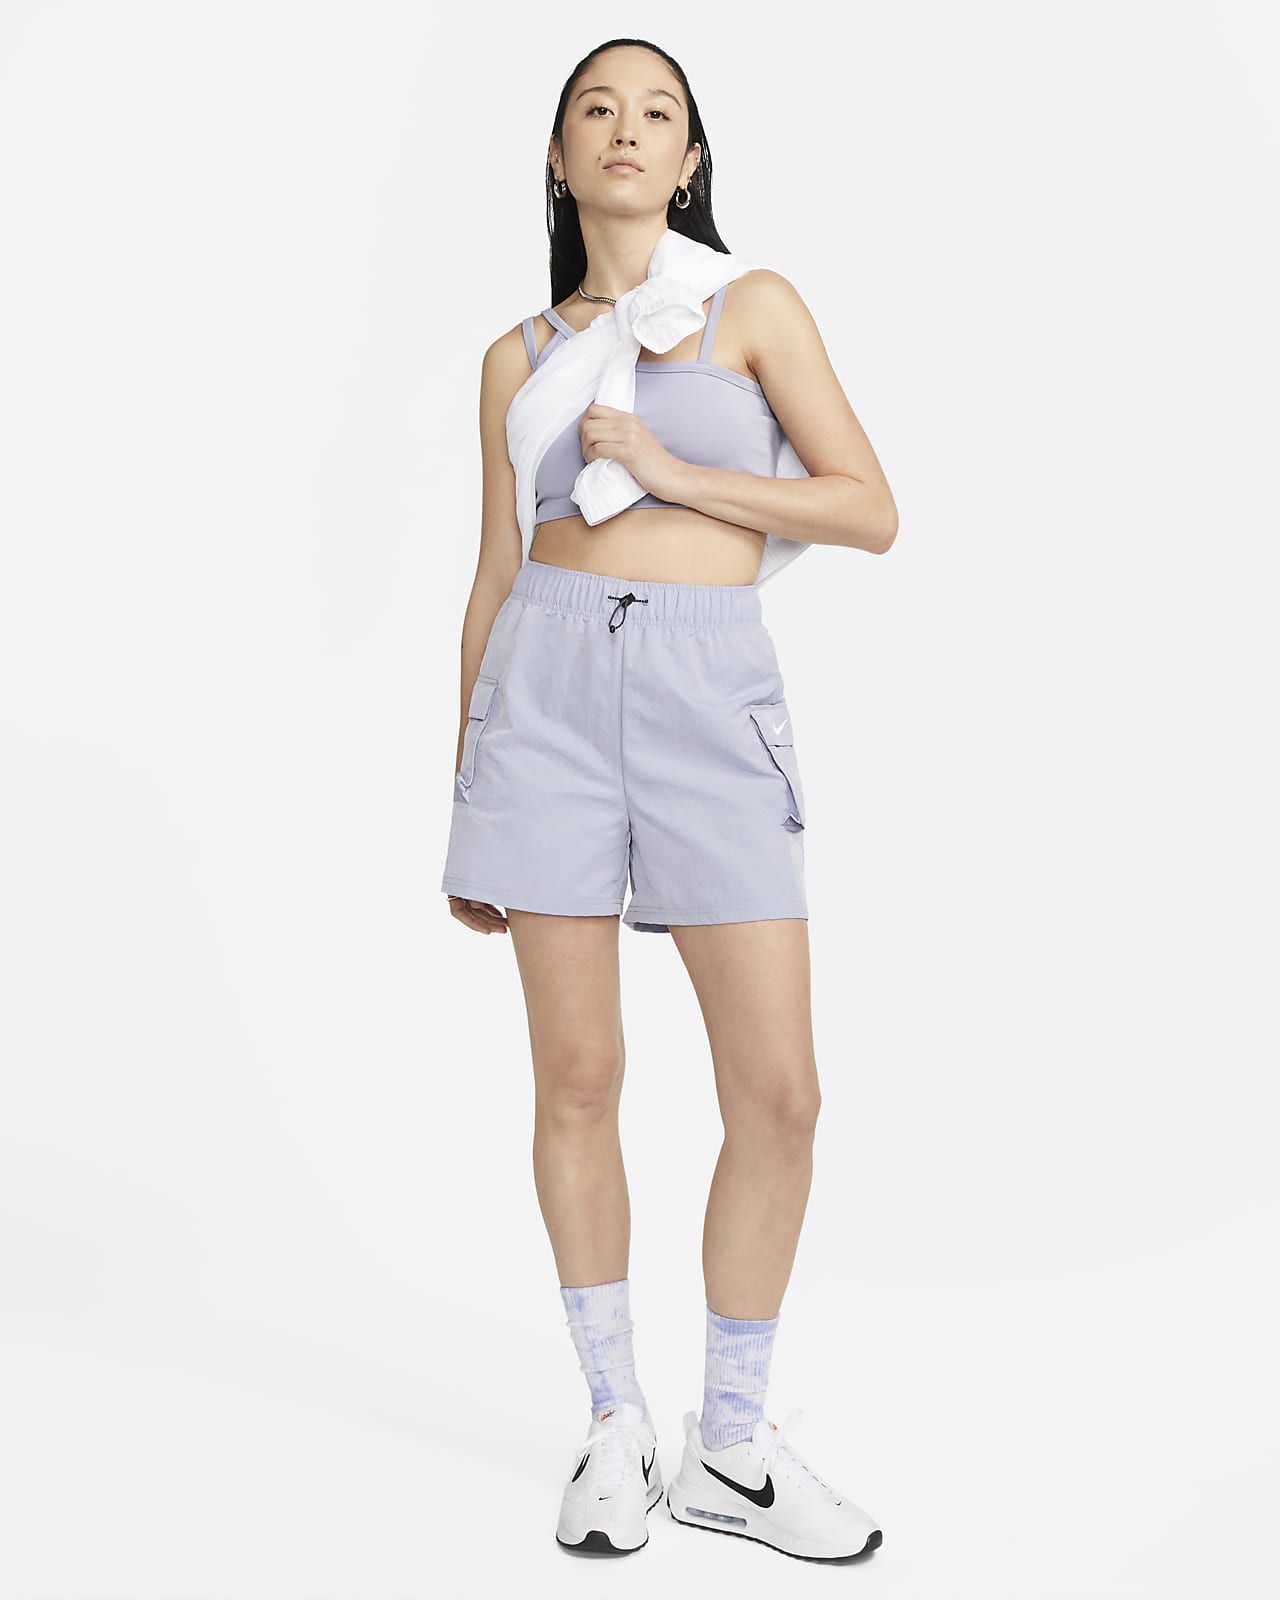 Women's Nike High Leg Brief Sportswear Clothing